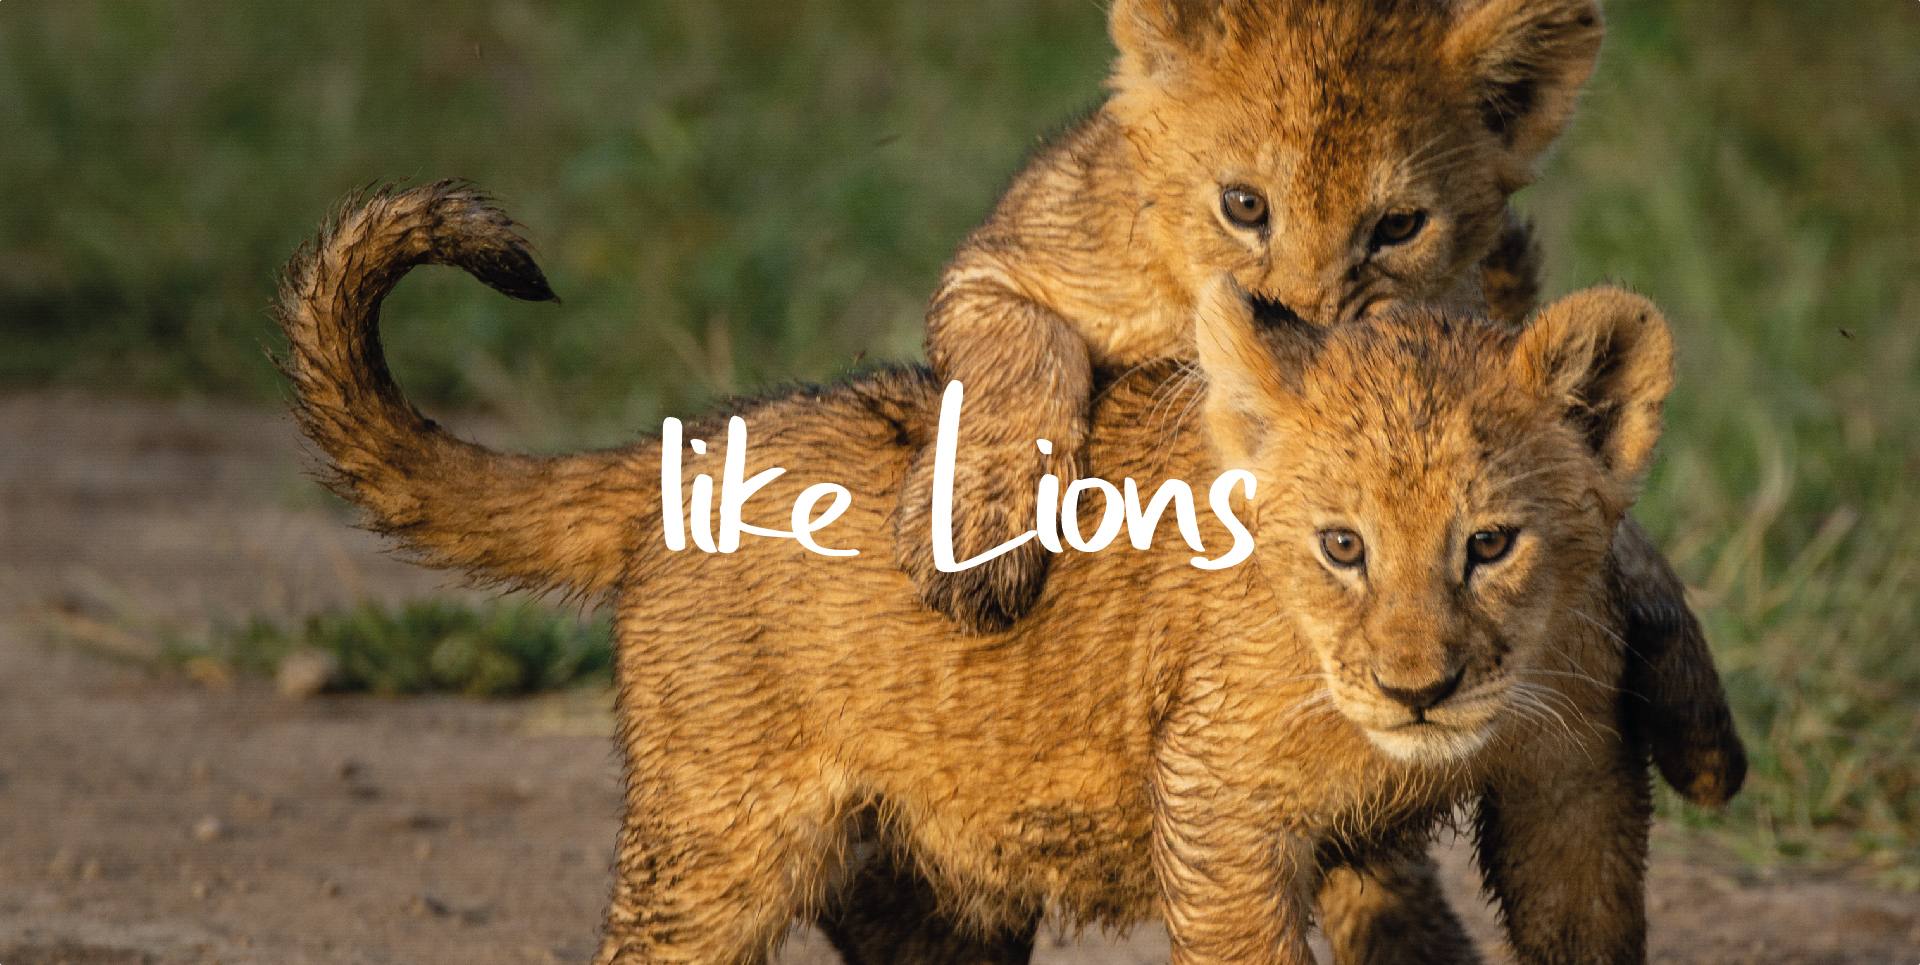 LIKE LIONS